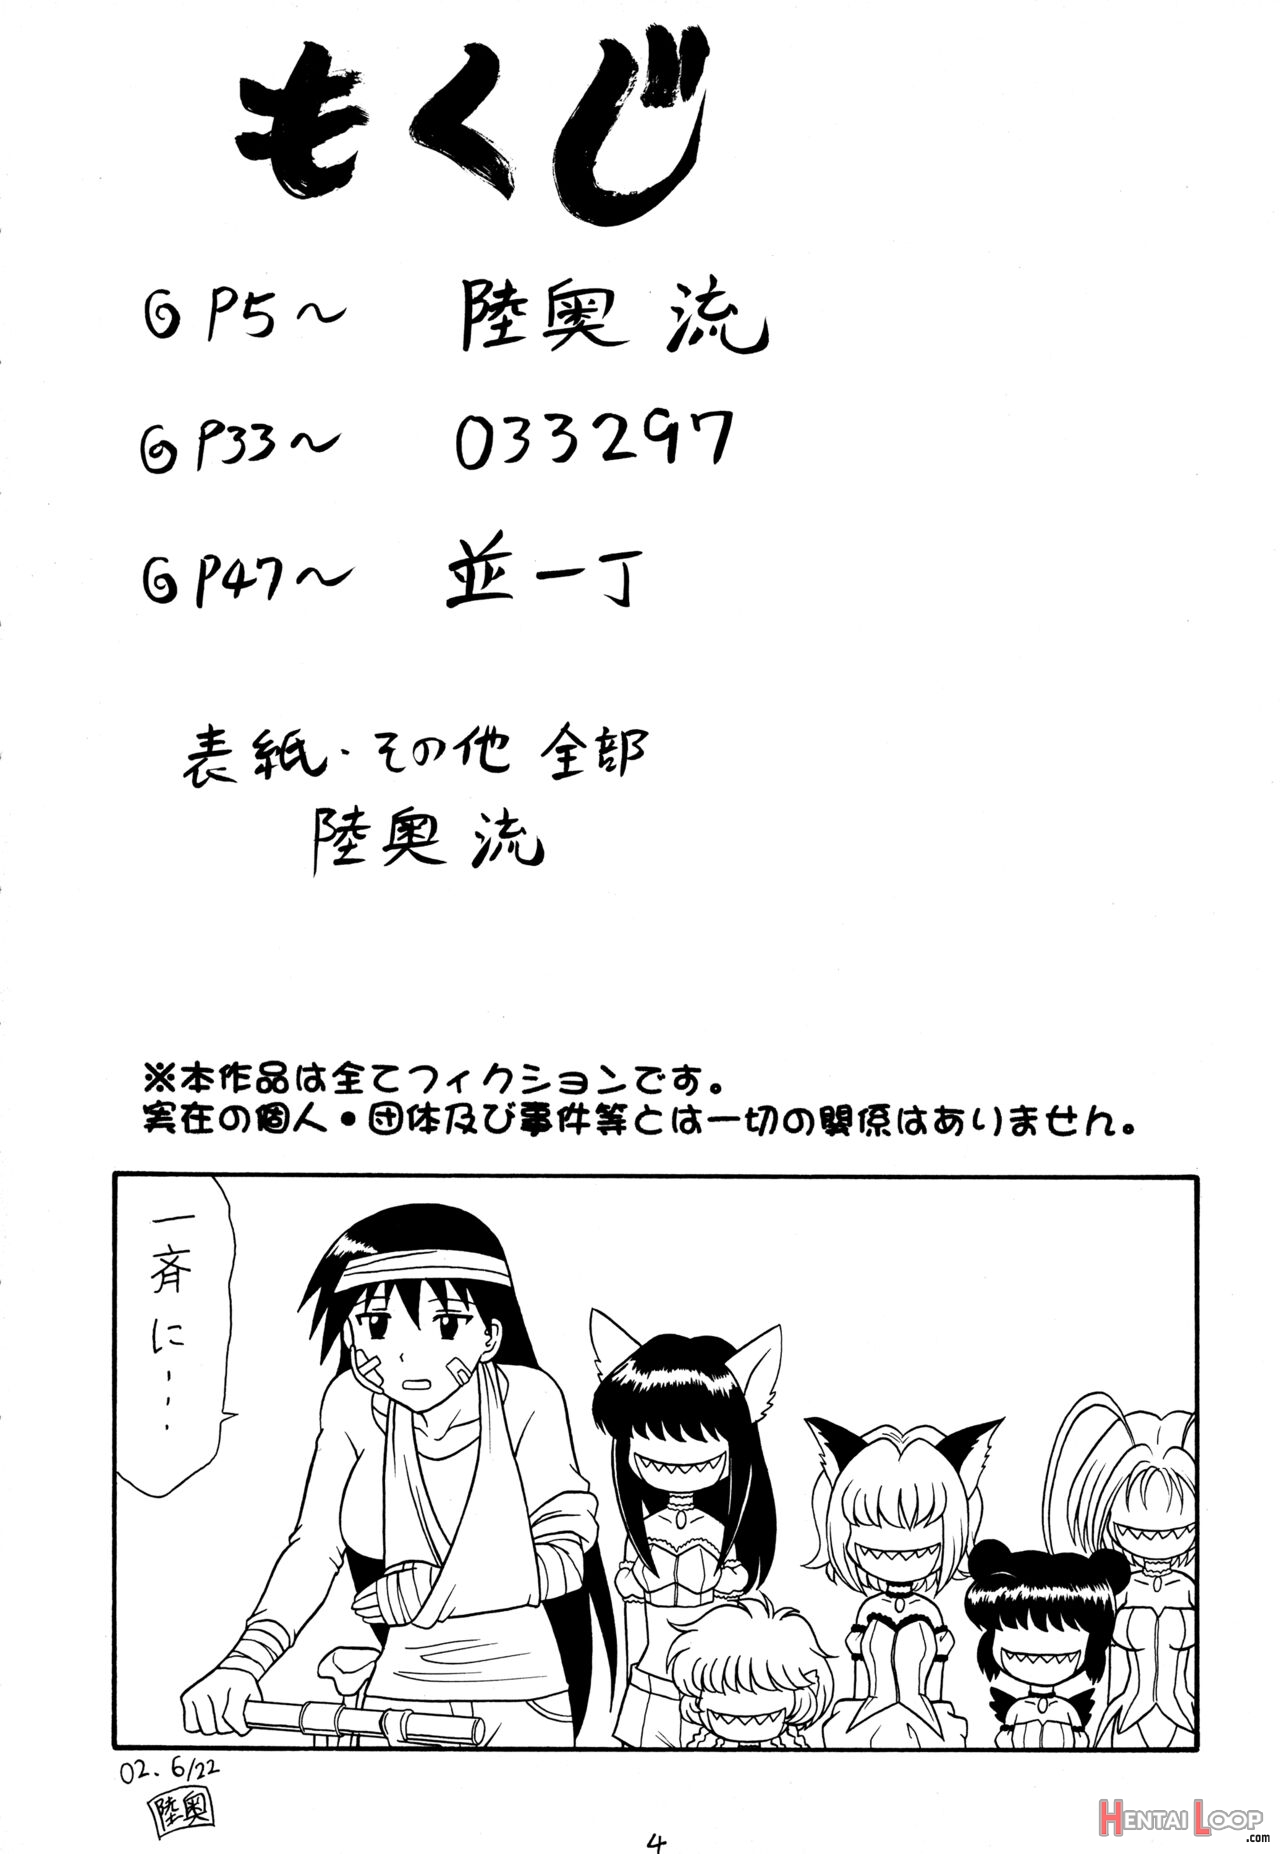 Sugoi Ikioi 11 - Chapter 1 Mutsu Nagare page 3